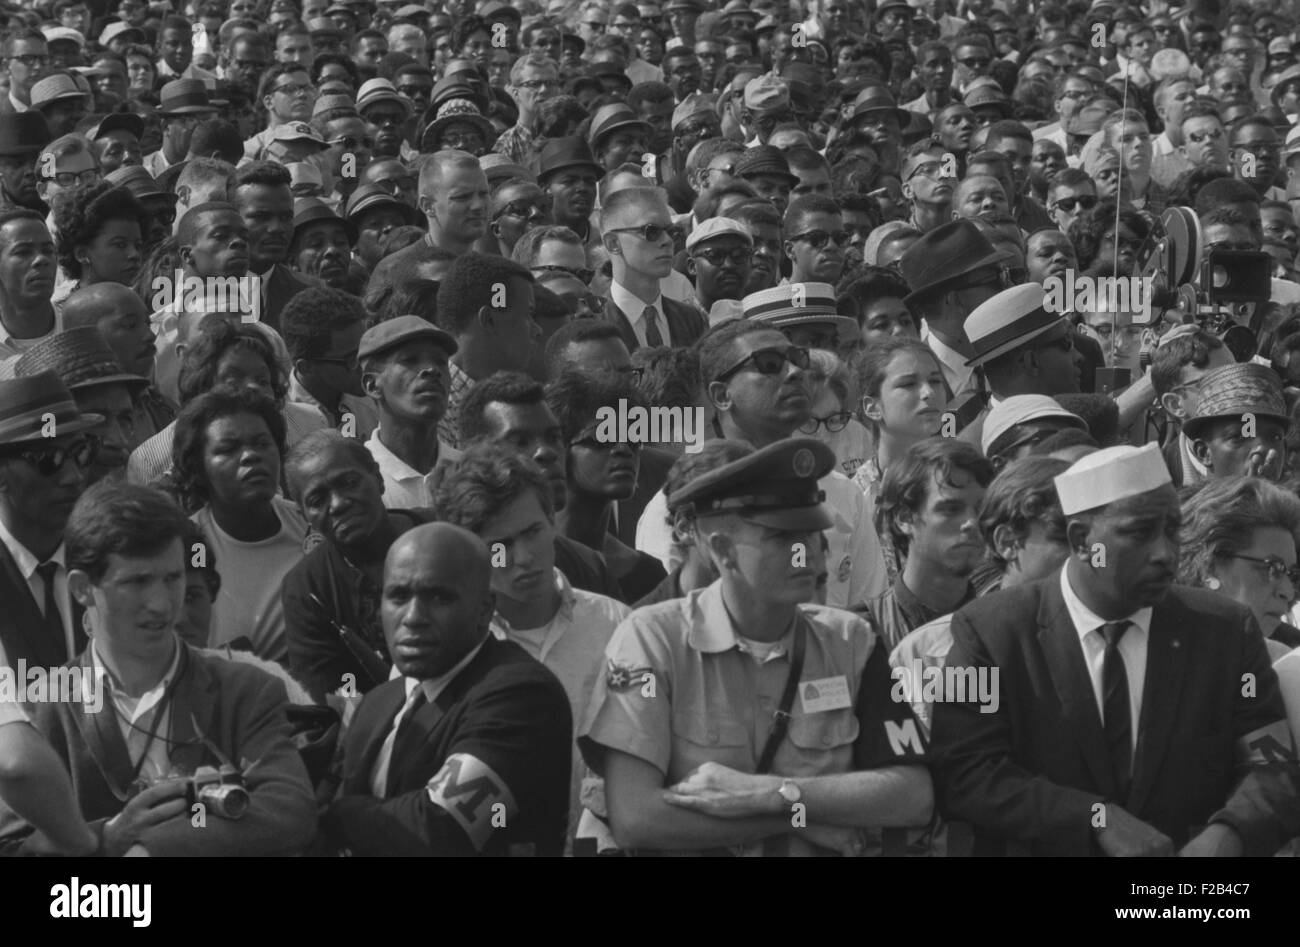 Gesichter in der Menge während des Marsches auf Washington, 28. August 1963. Beobachter geschätzt, dass 75 – 80 % der Demonstranten schwarz waren. - Stockfoto